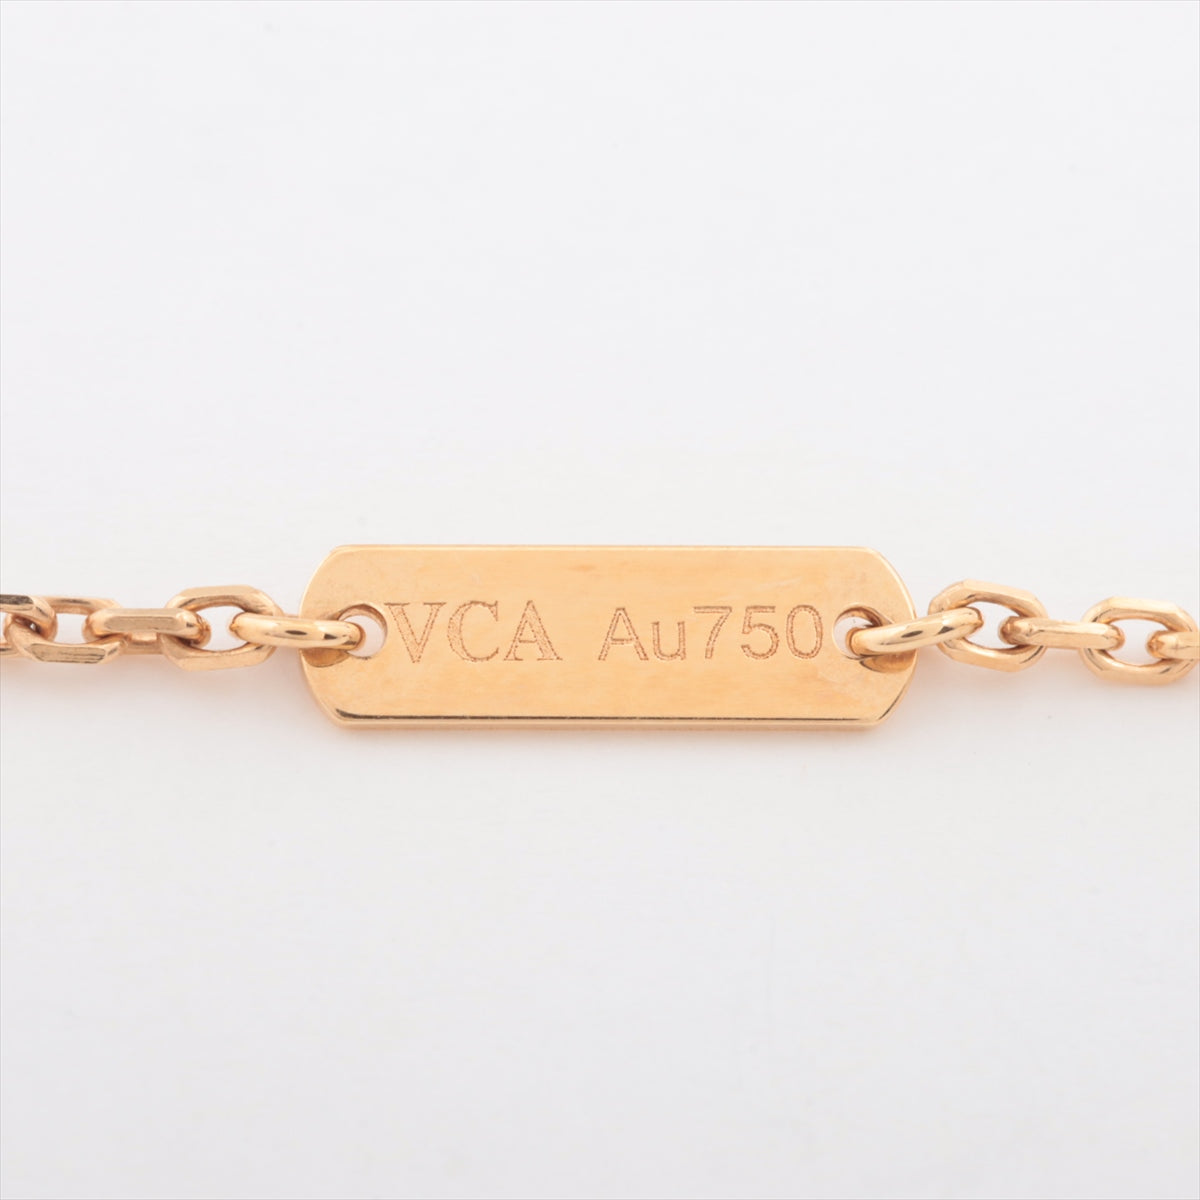 Van Cleef &amp; Arpels Vintage Alhambra Golden S Diamond Necklace 750 (YG) 6.5g VCARP2R700 2018 Limited